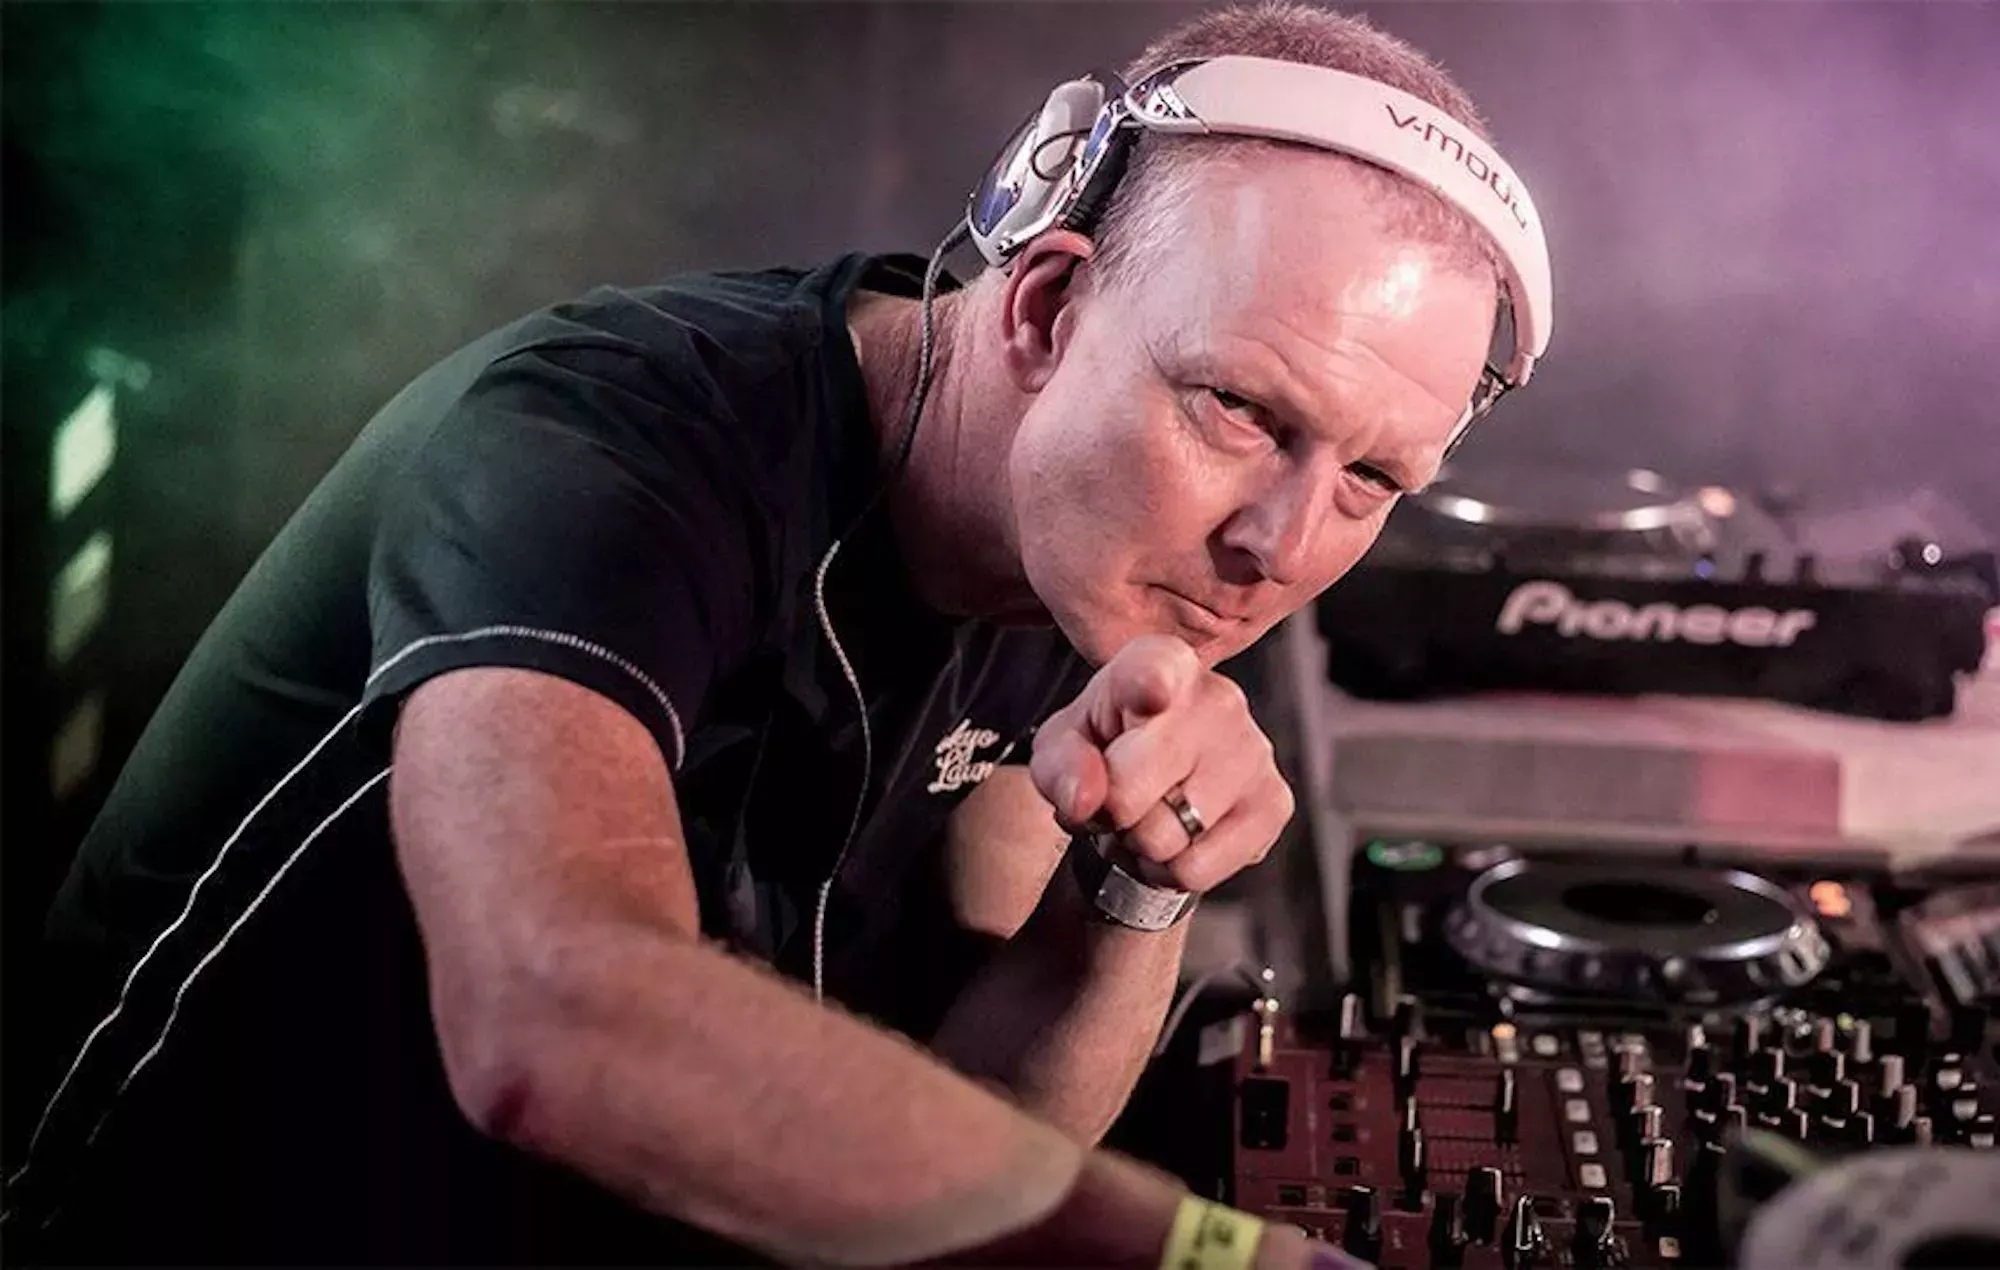 El productor y DJ de Manchester Stu Allan ha muerto